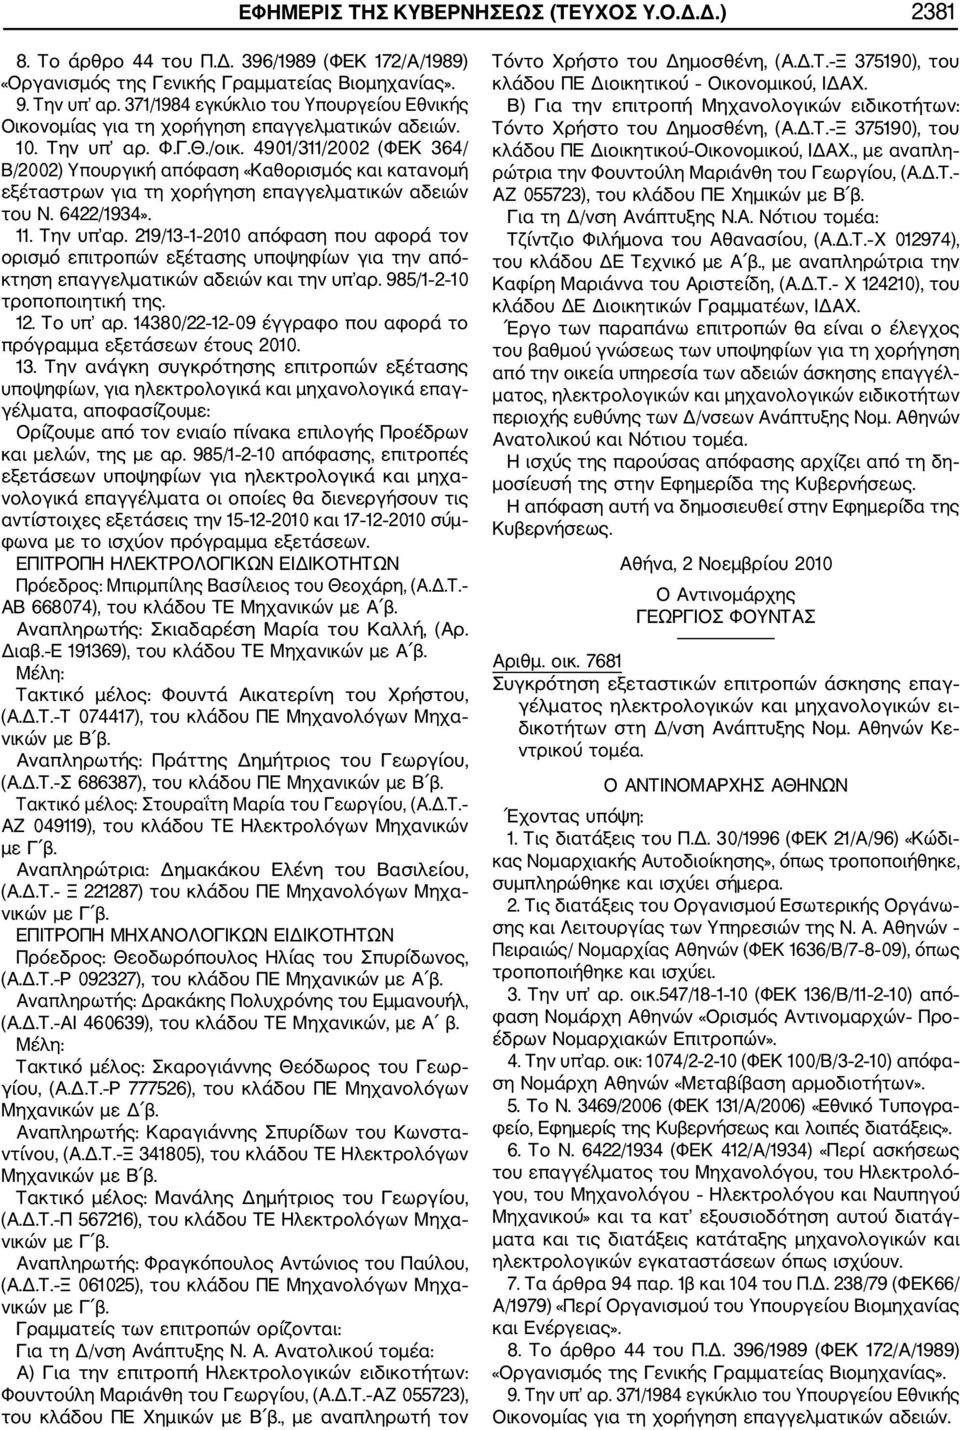 4901/311/2002 (ΦΕΚ 364/ Β/2002) Υπουργική απόφαση «Καθορισμός και κατανομή εξέταστρων για τη χορήγηση επαγγελματικών αδειών του Ν. 6422/1934». 11. Την υπ αρ.